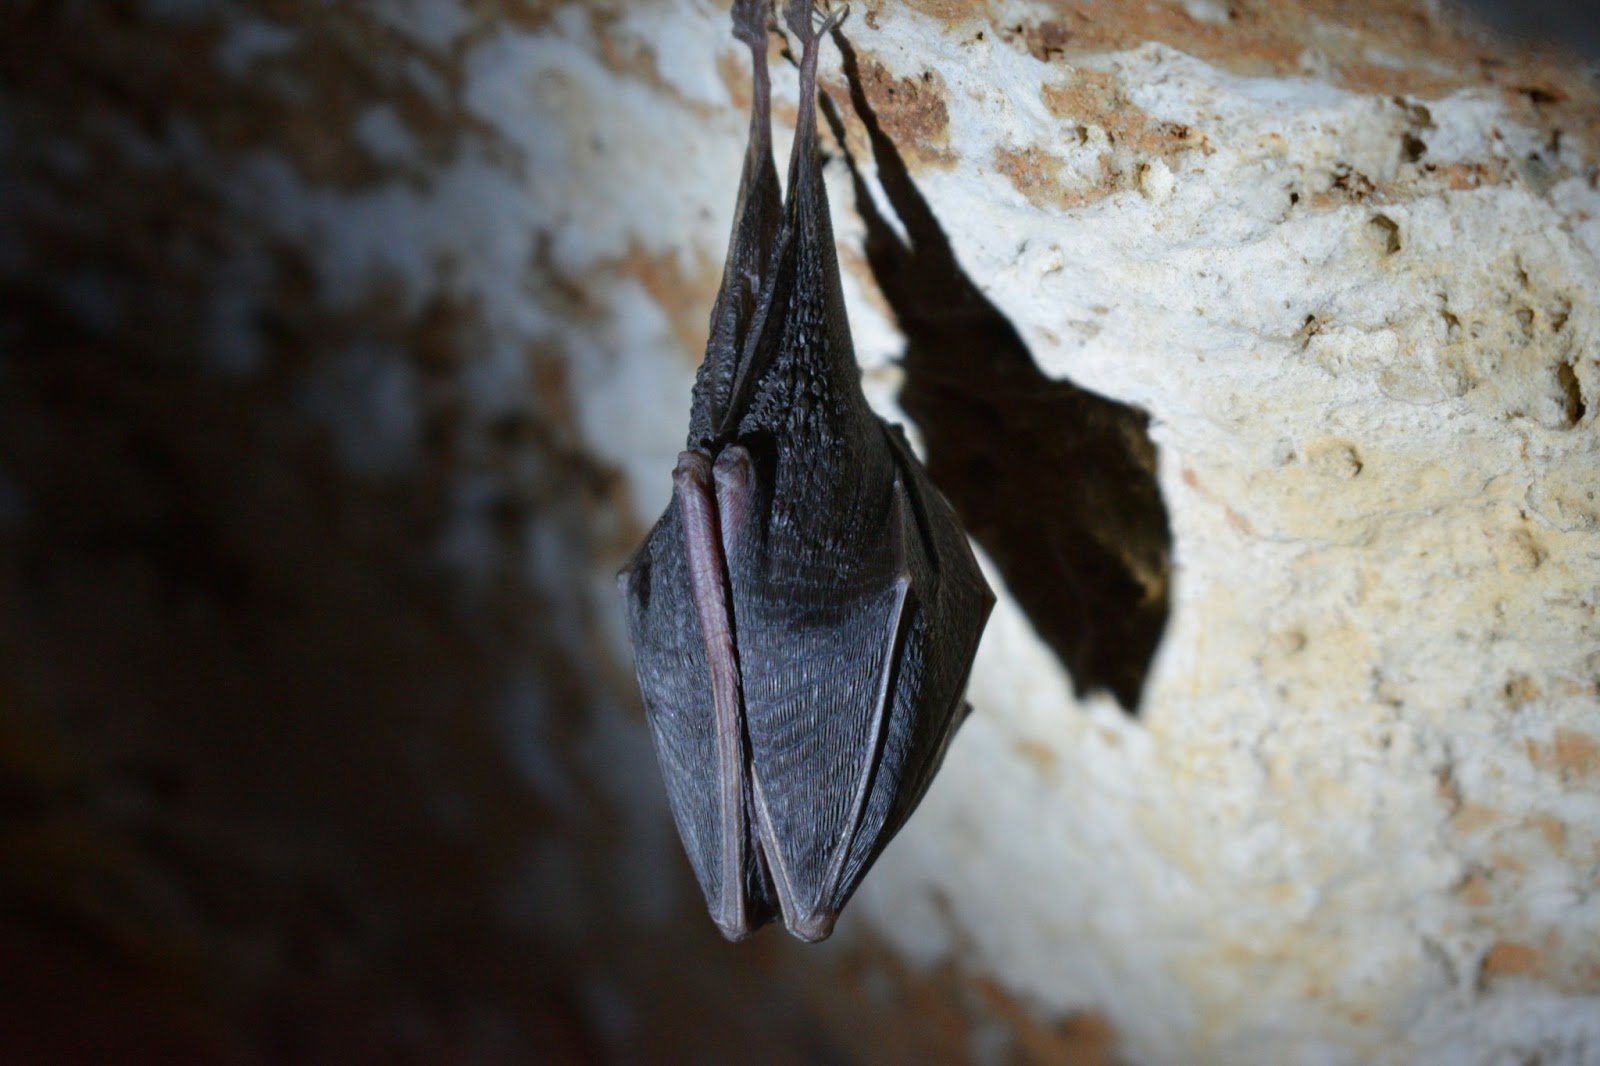 A bat in its natural habitat - the cave